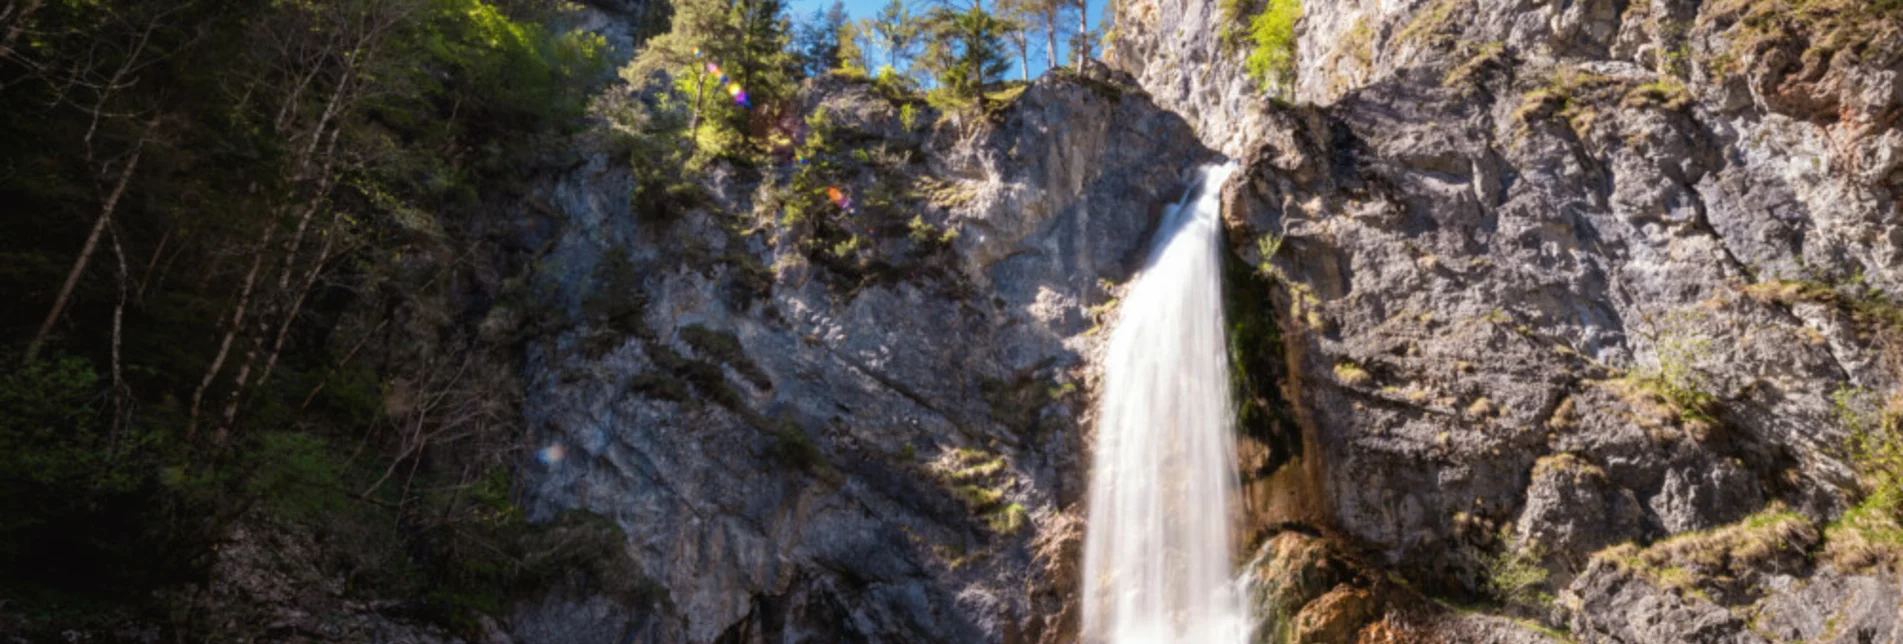 Nordic Walking Bewegungsarena - Salza waterfall-round - Touren-Impression #1 | © Erlebnisregion Schladming-Dachstein